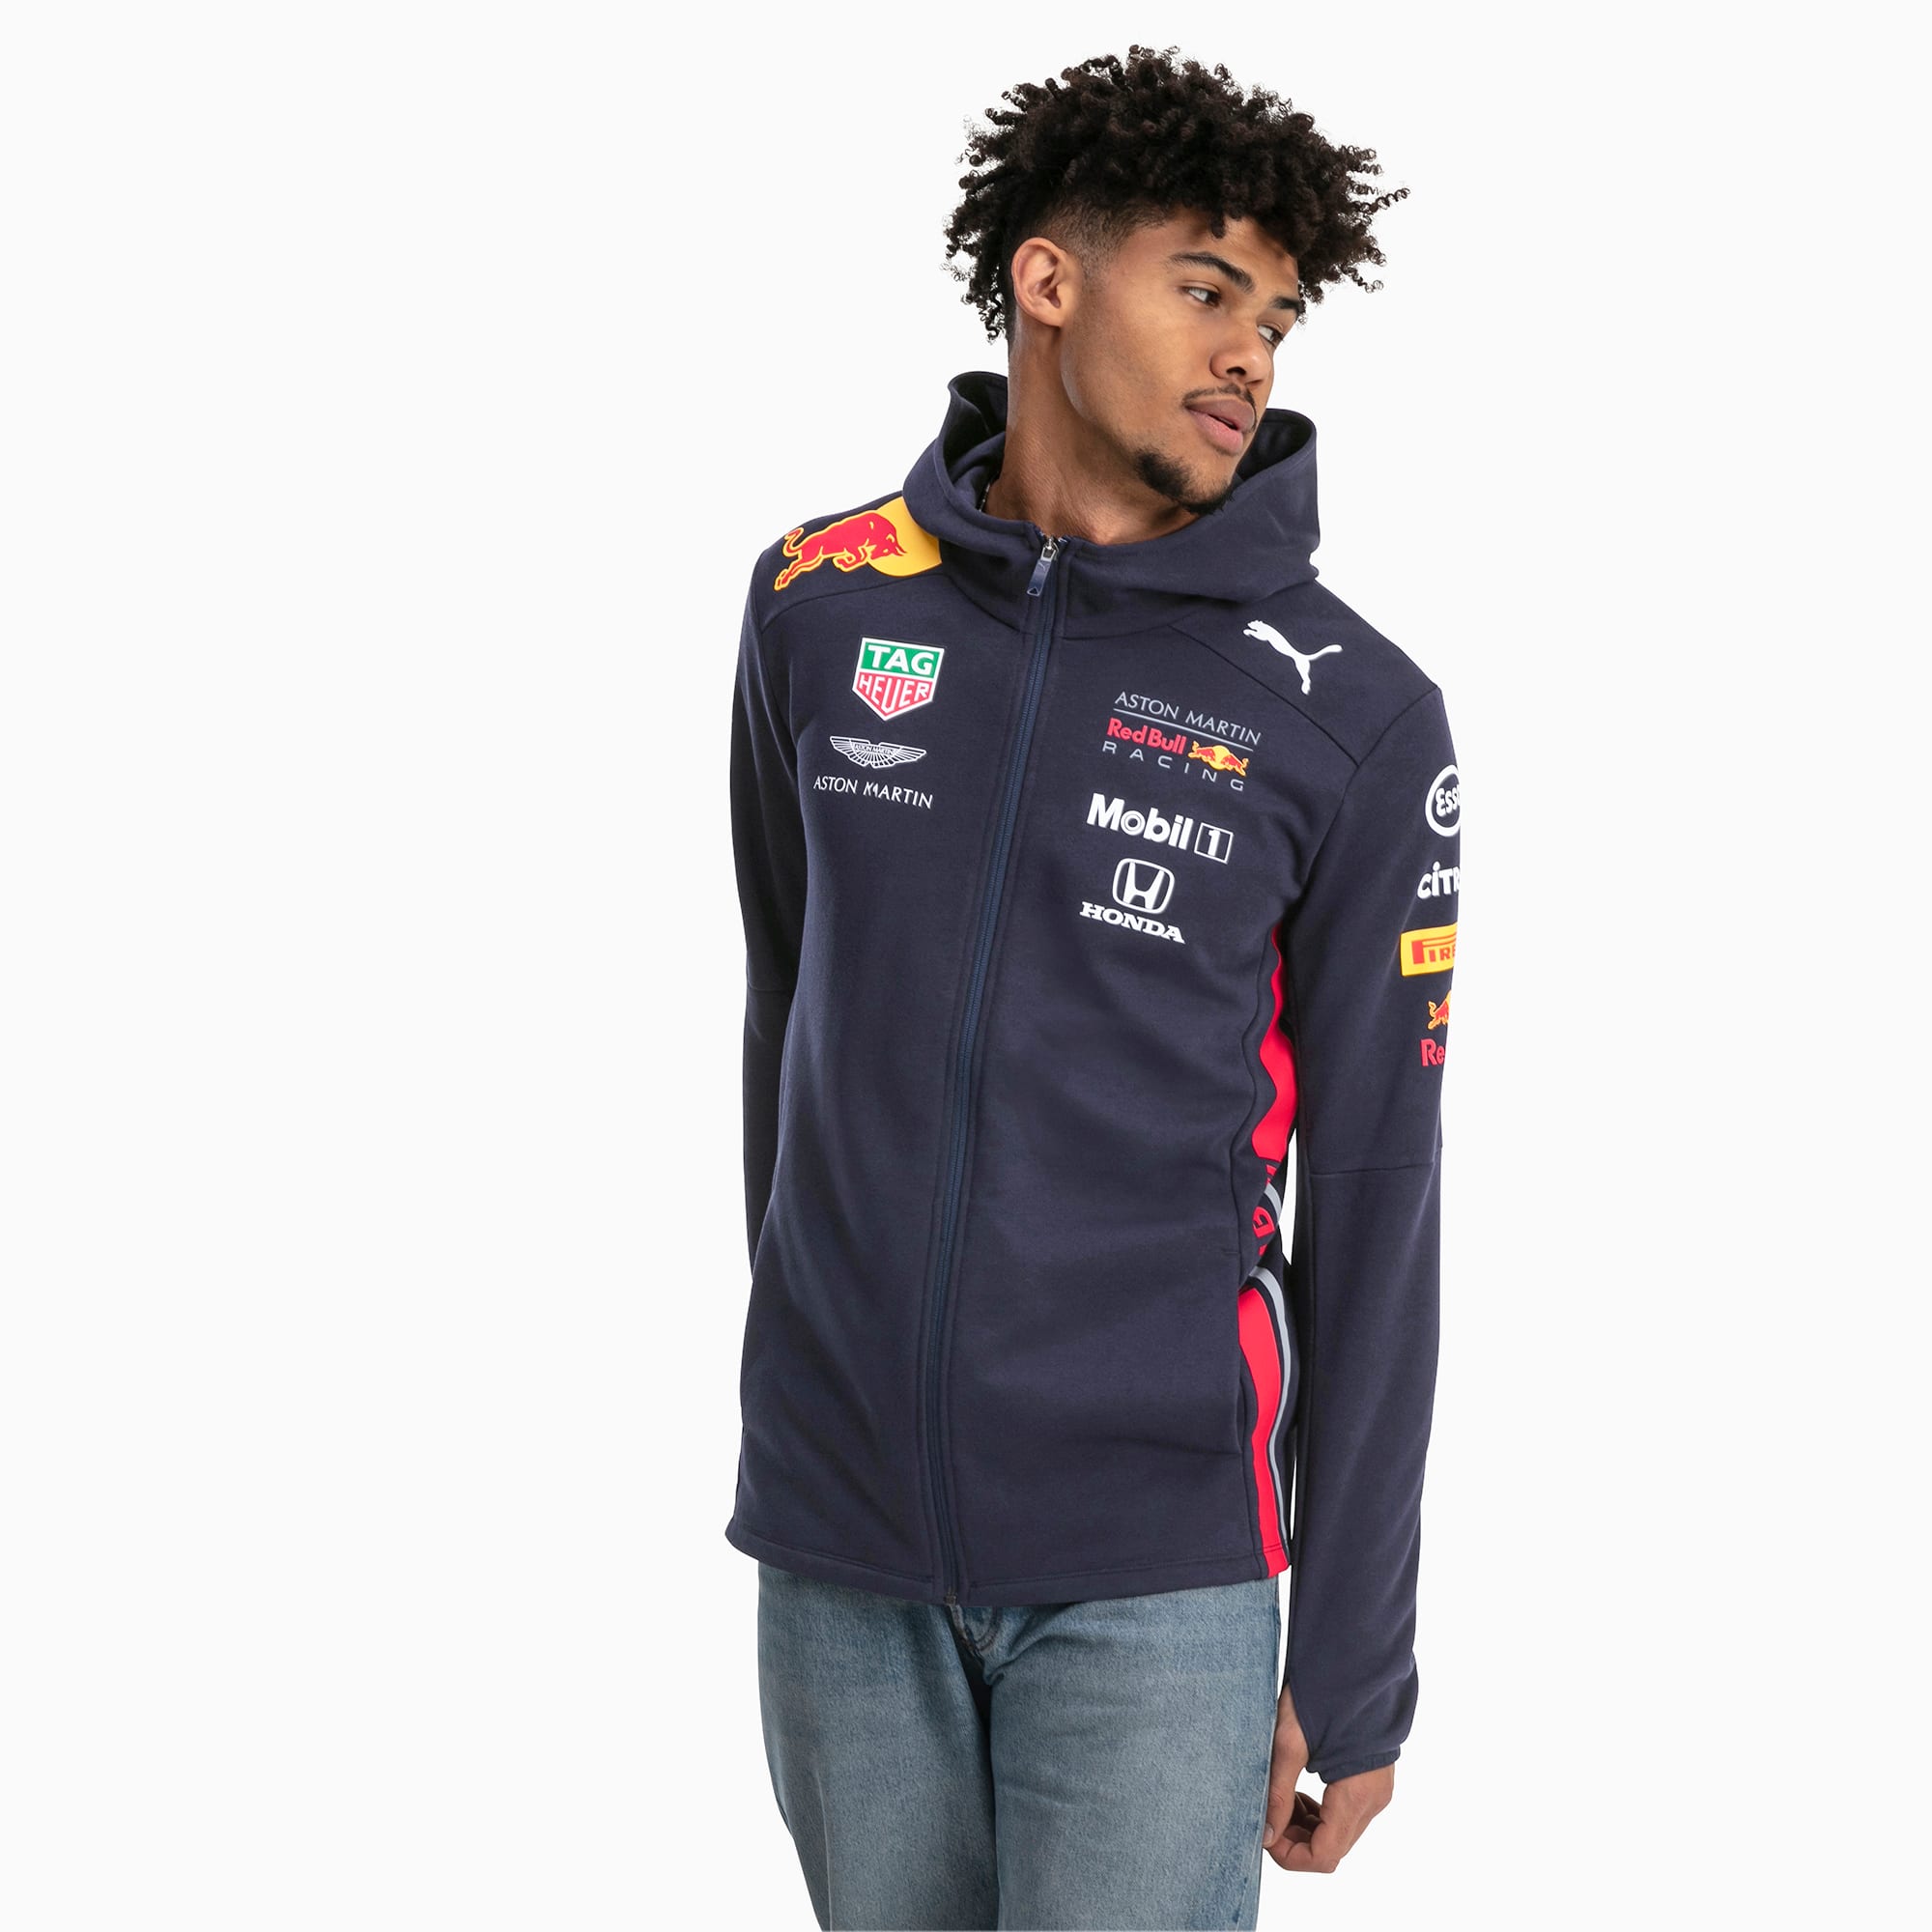 puma racing jacket